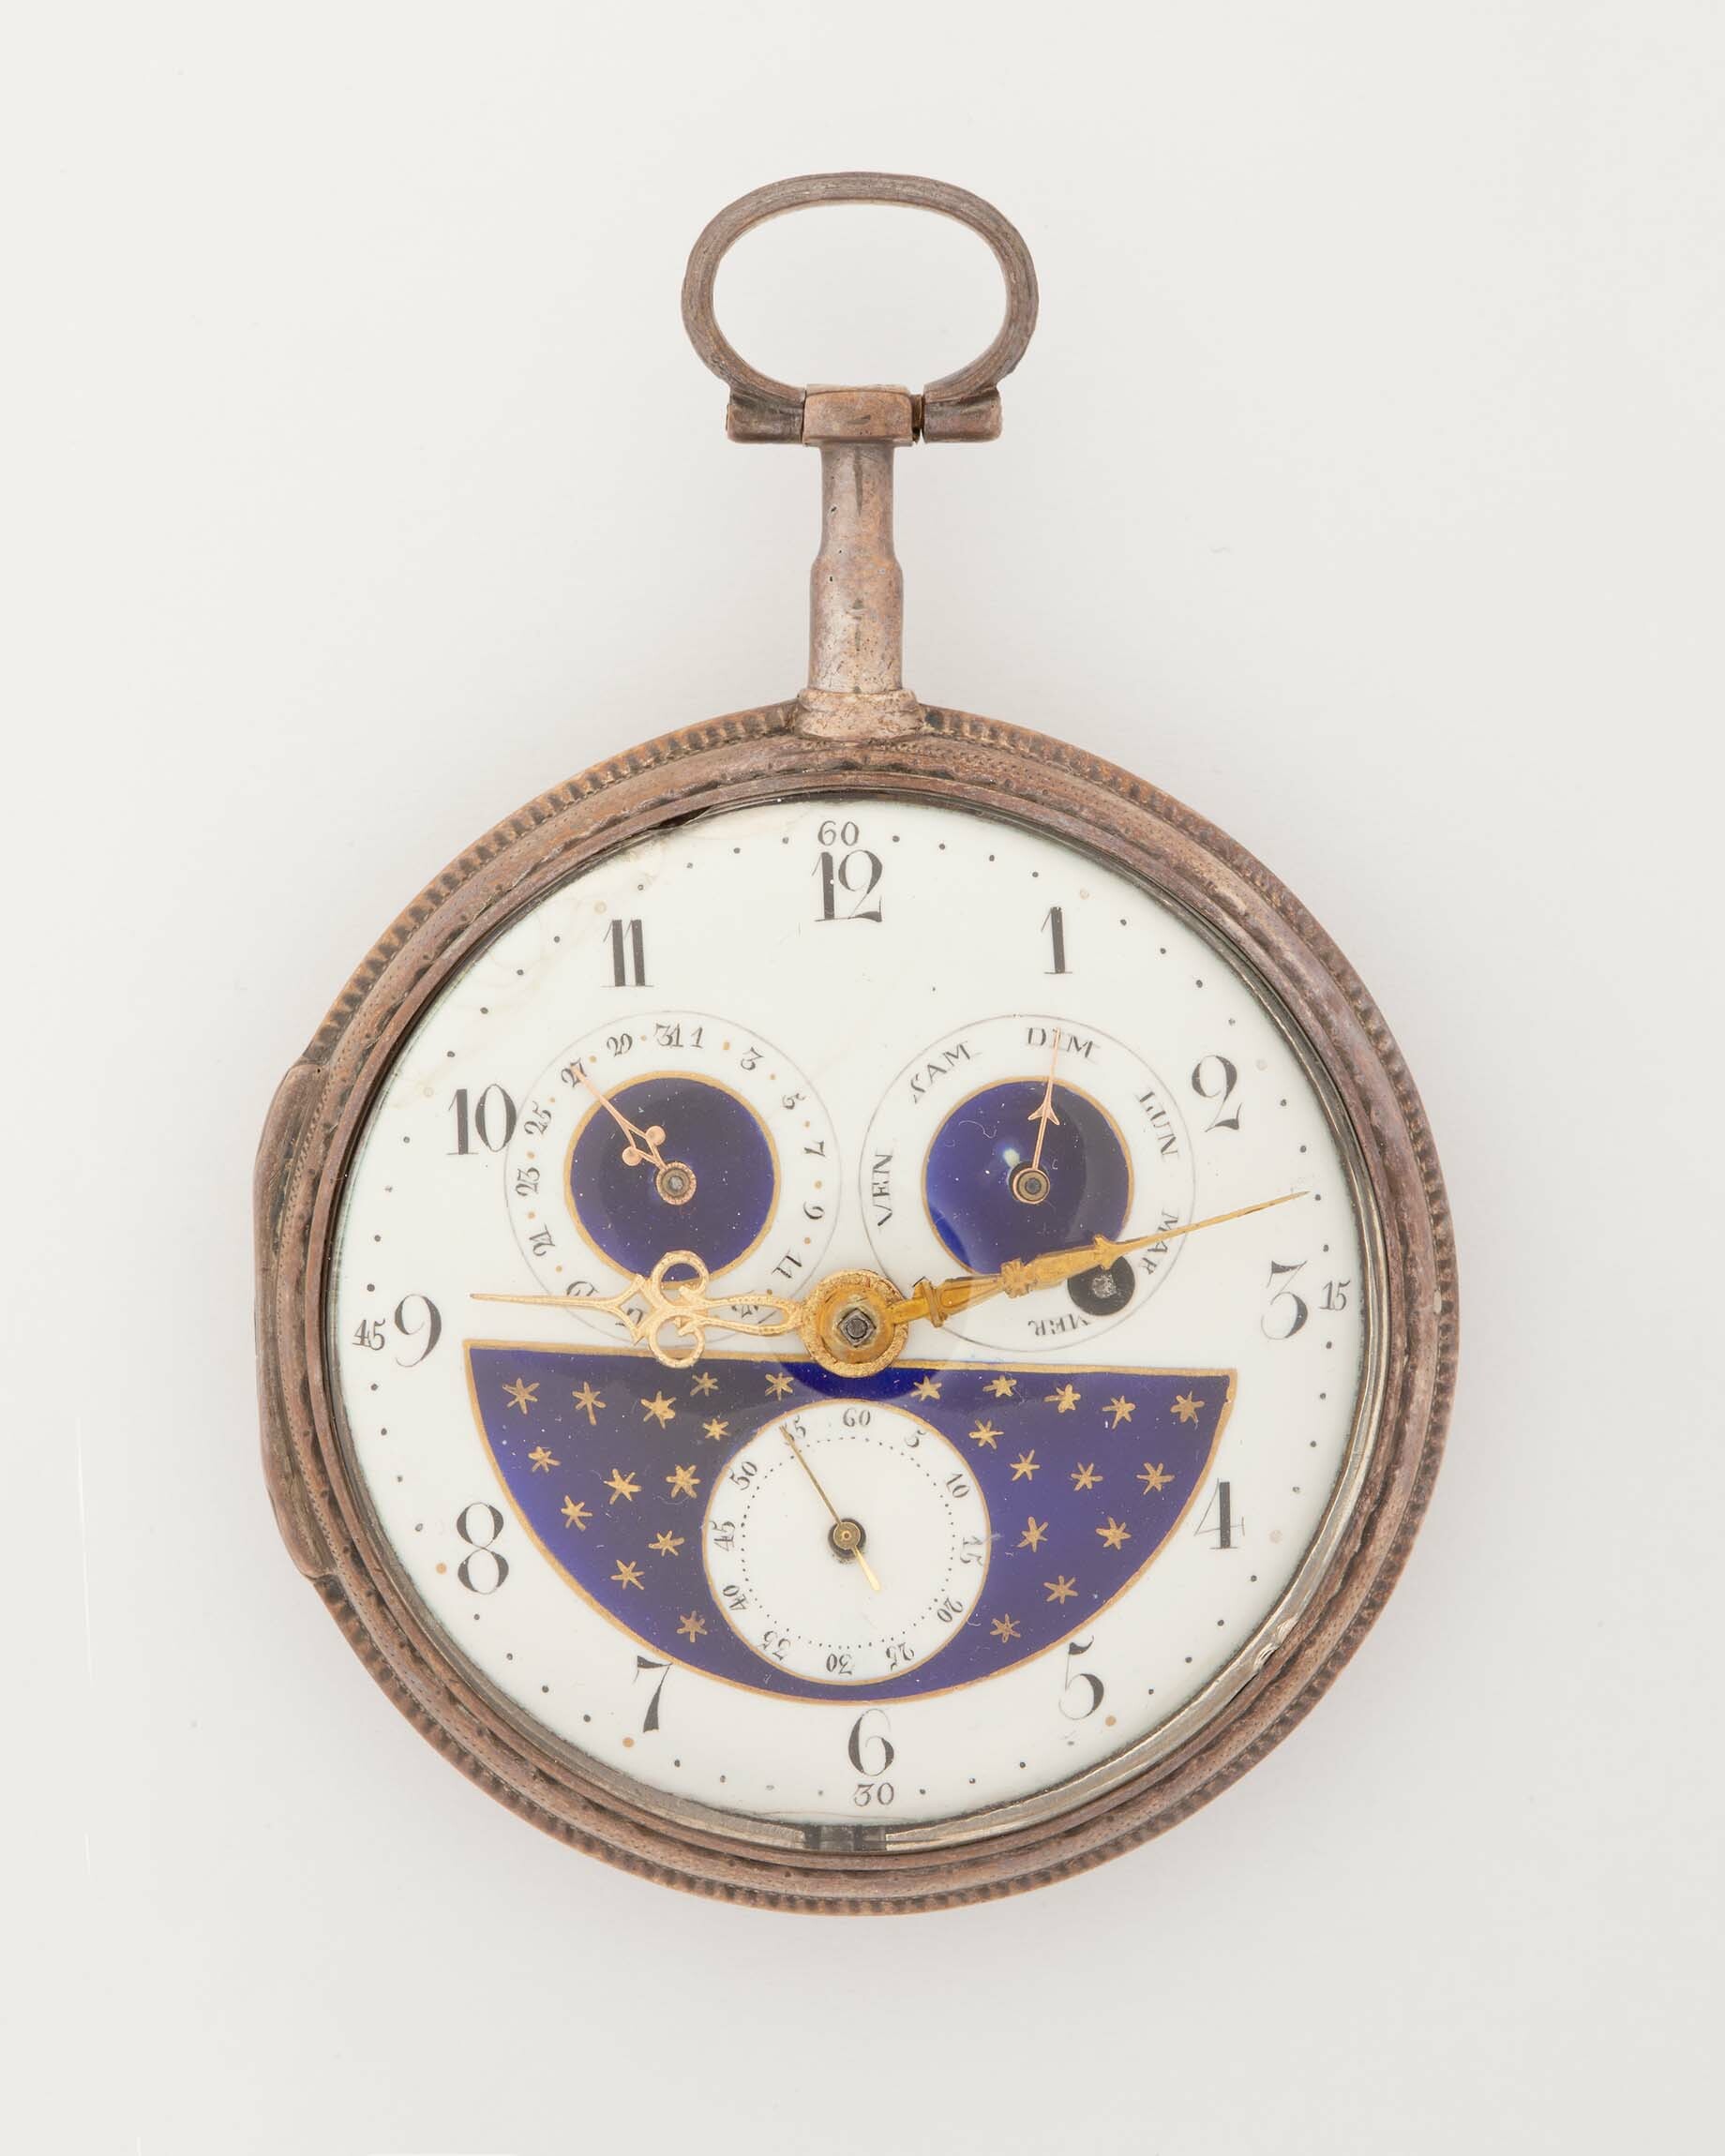 Taschenuhr mit Kalender, um 1800 (Deutsches Uhrenmuseum CC BY-SA)